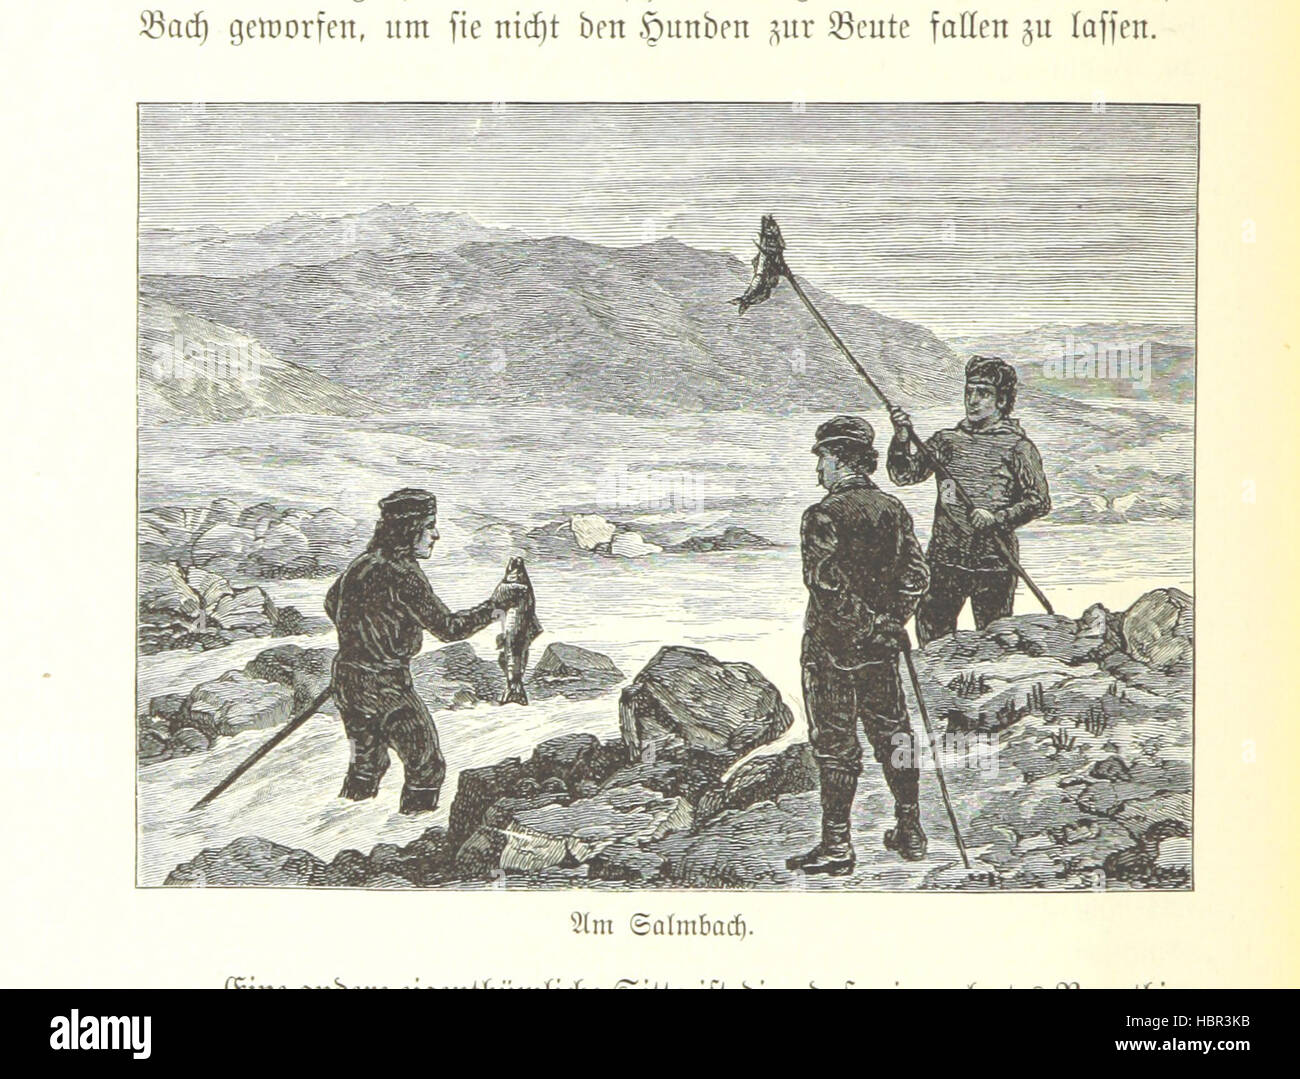 Bild von Seite 146 von "Als Eskimo Unter Den Eskimos. Eine Schilderung der Cannondale der Schwatka'schen Franklin-Aufsuchungs-Expedition in Den Jahren 1878-80, etc. "Bild von Seite 146 von" Als Eskimo Unter Den Stockfoto